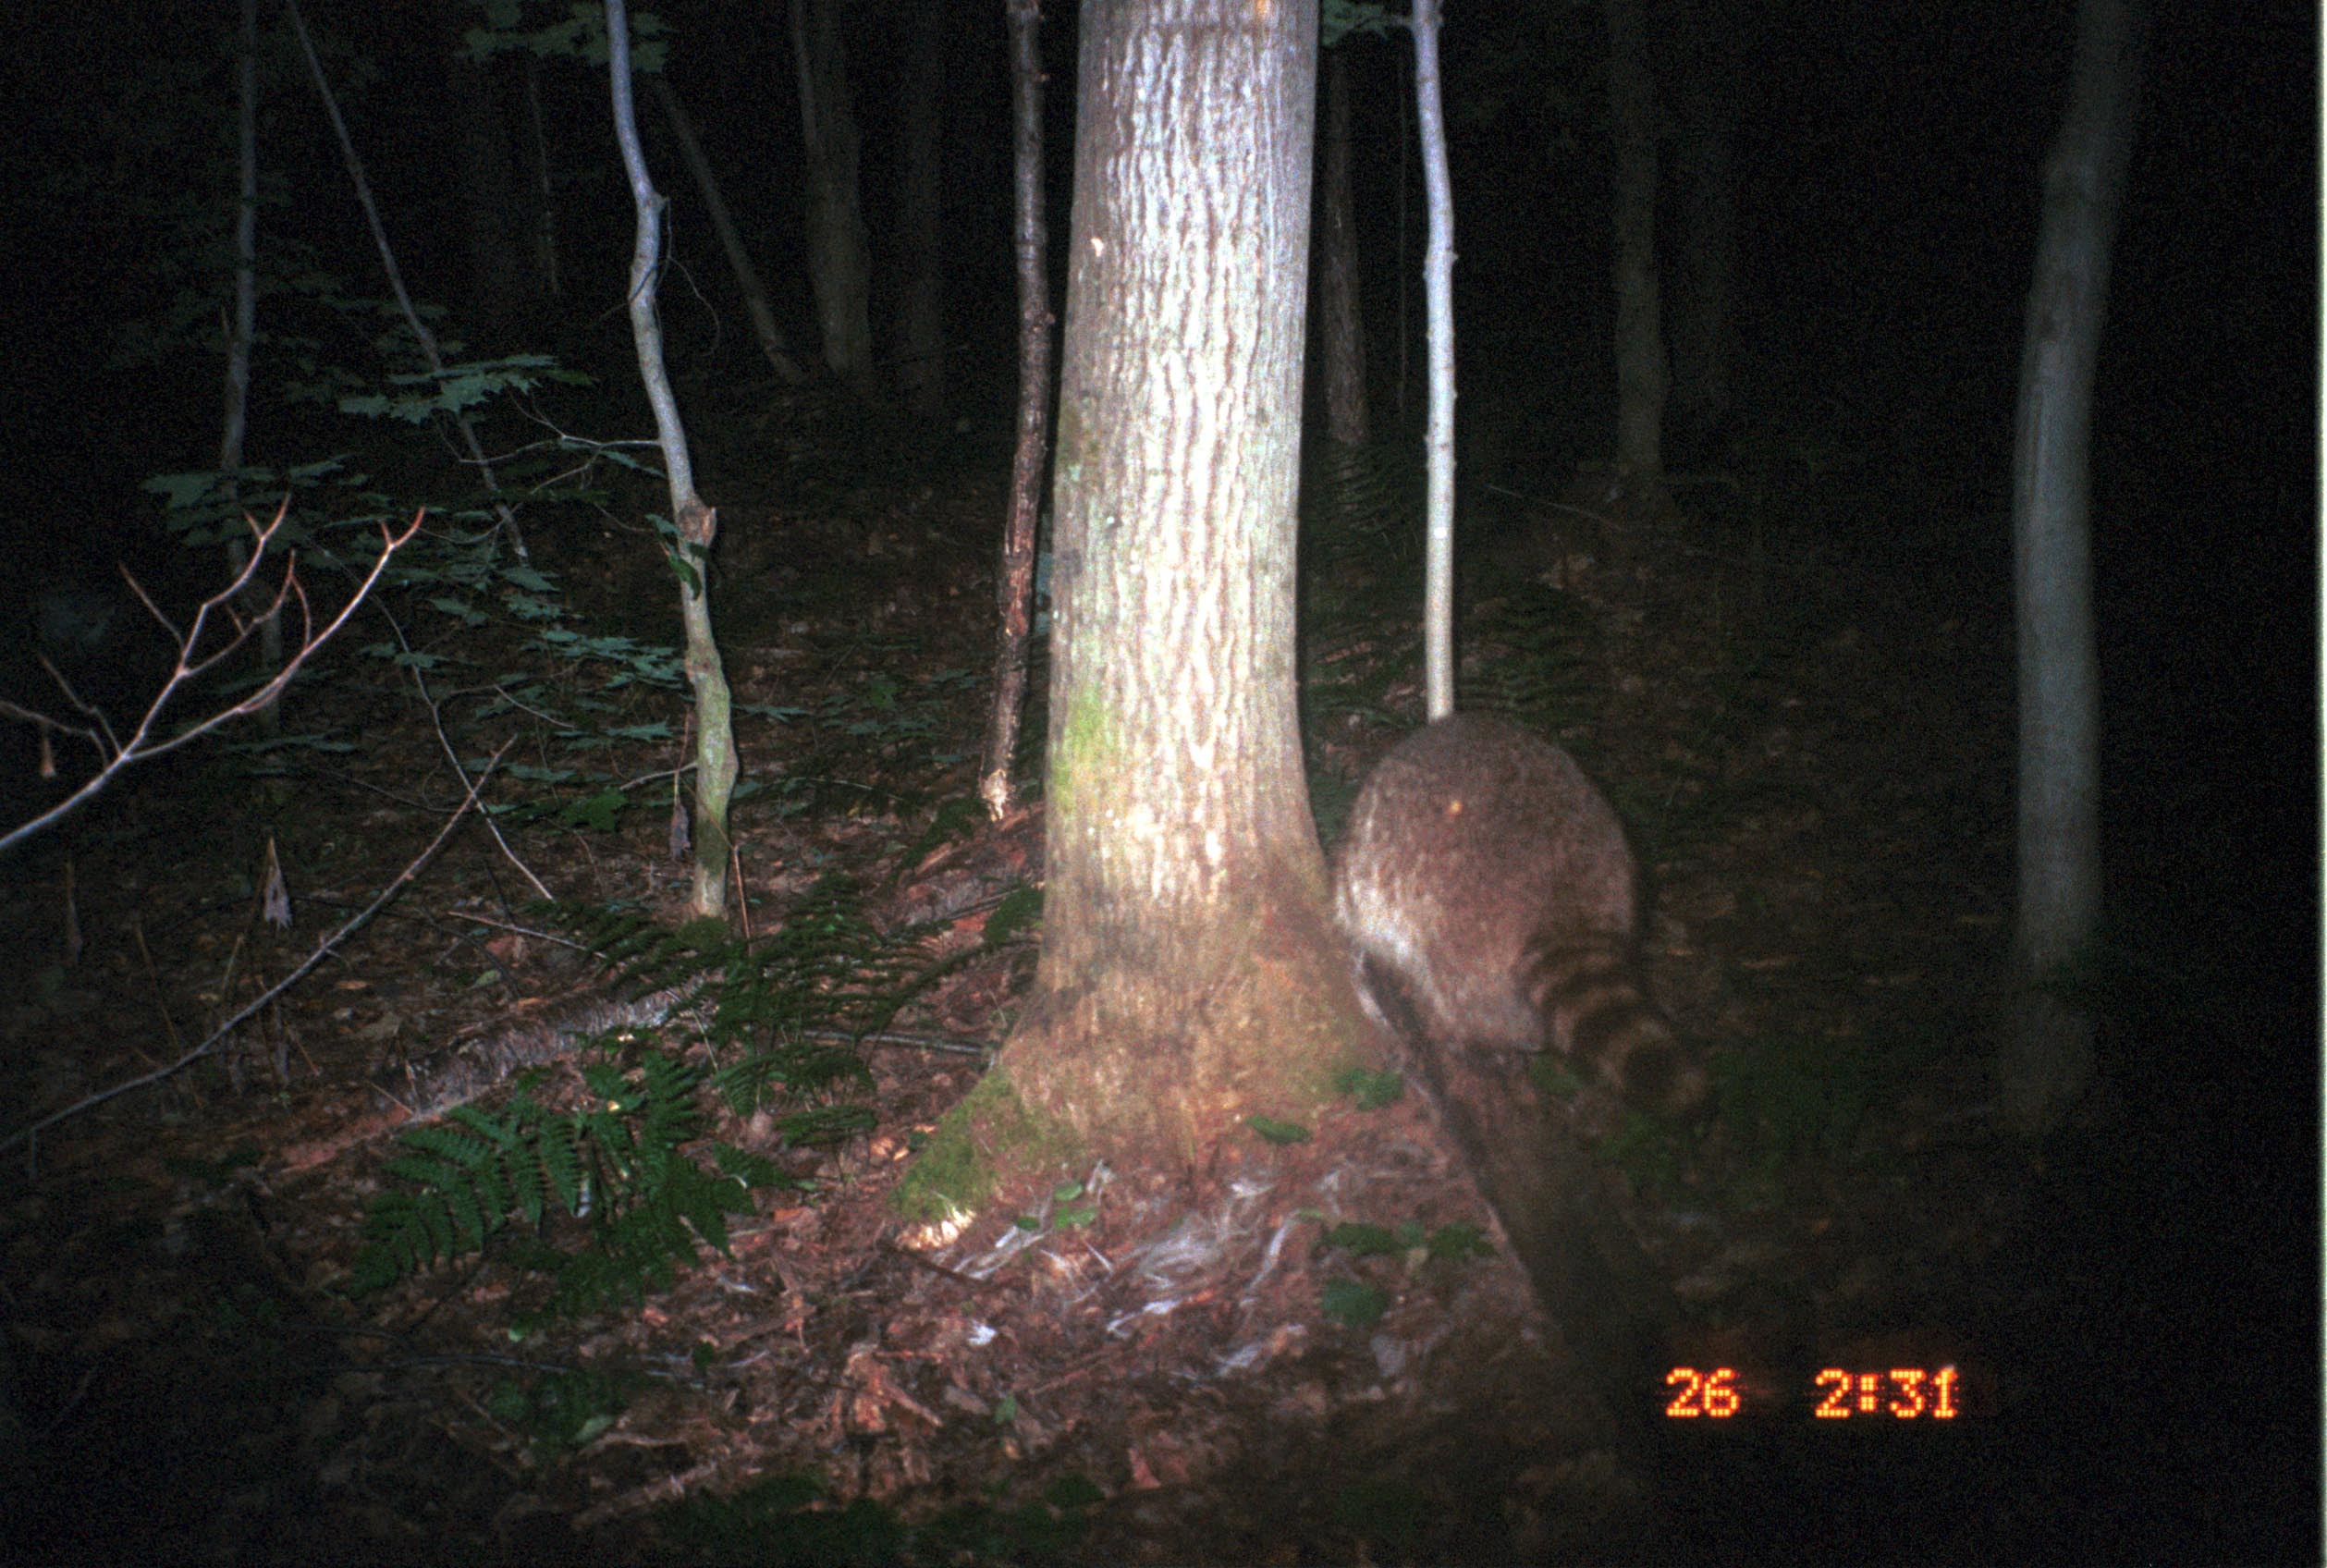 Image of Northern Raccoon